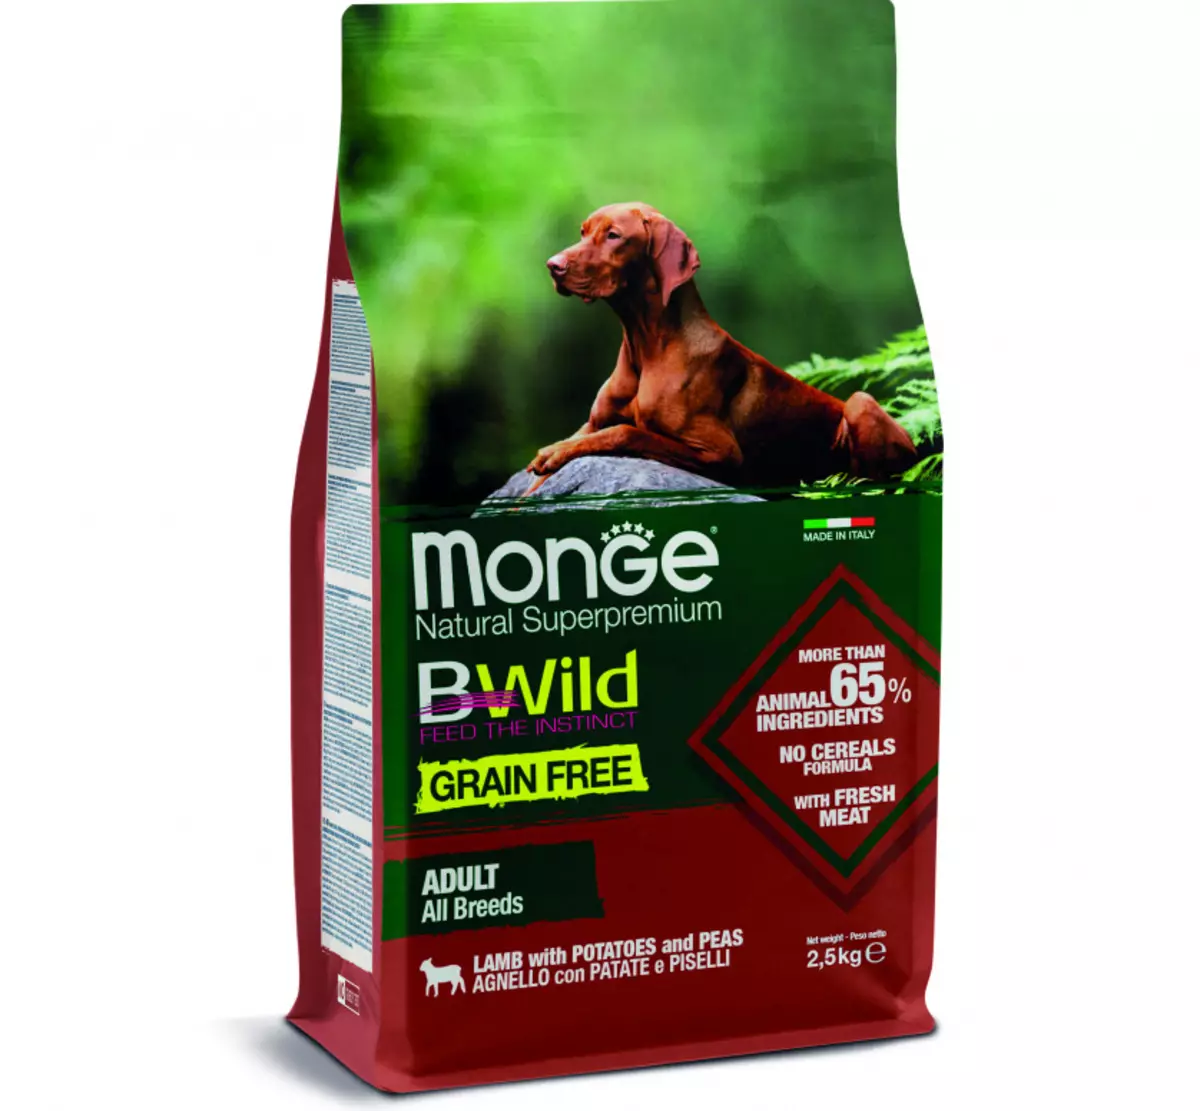 Monge Pes Feed: Zloženie konzervovaných potravín (mokré psie) a suché krmivá, pakety 12-15 kg. Posolový krém s jahňacím psom Bwild Obilie zadarmo a ďalšie produkty, recenzie 21642_14